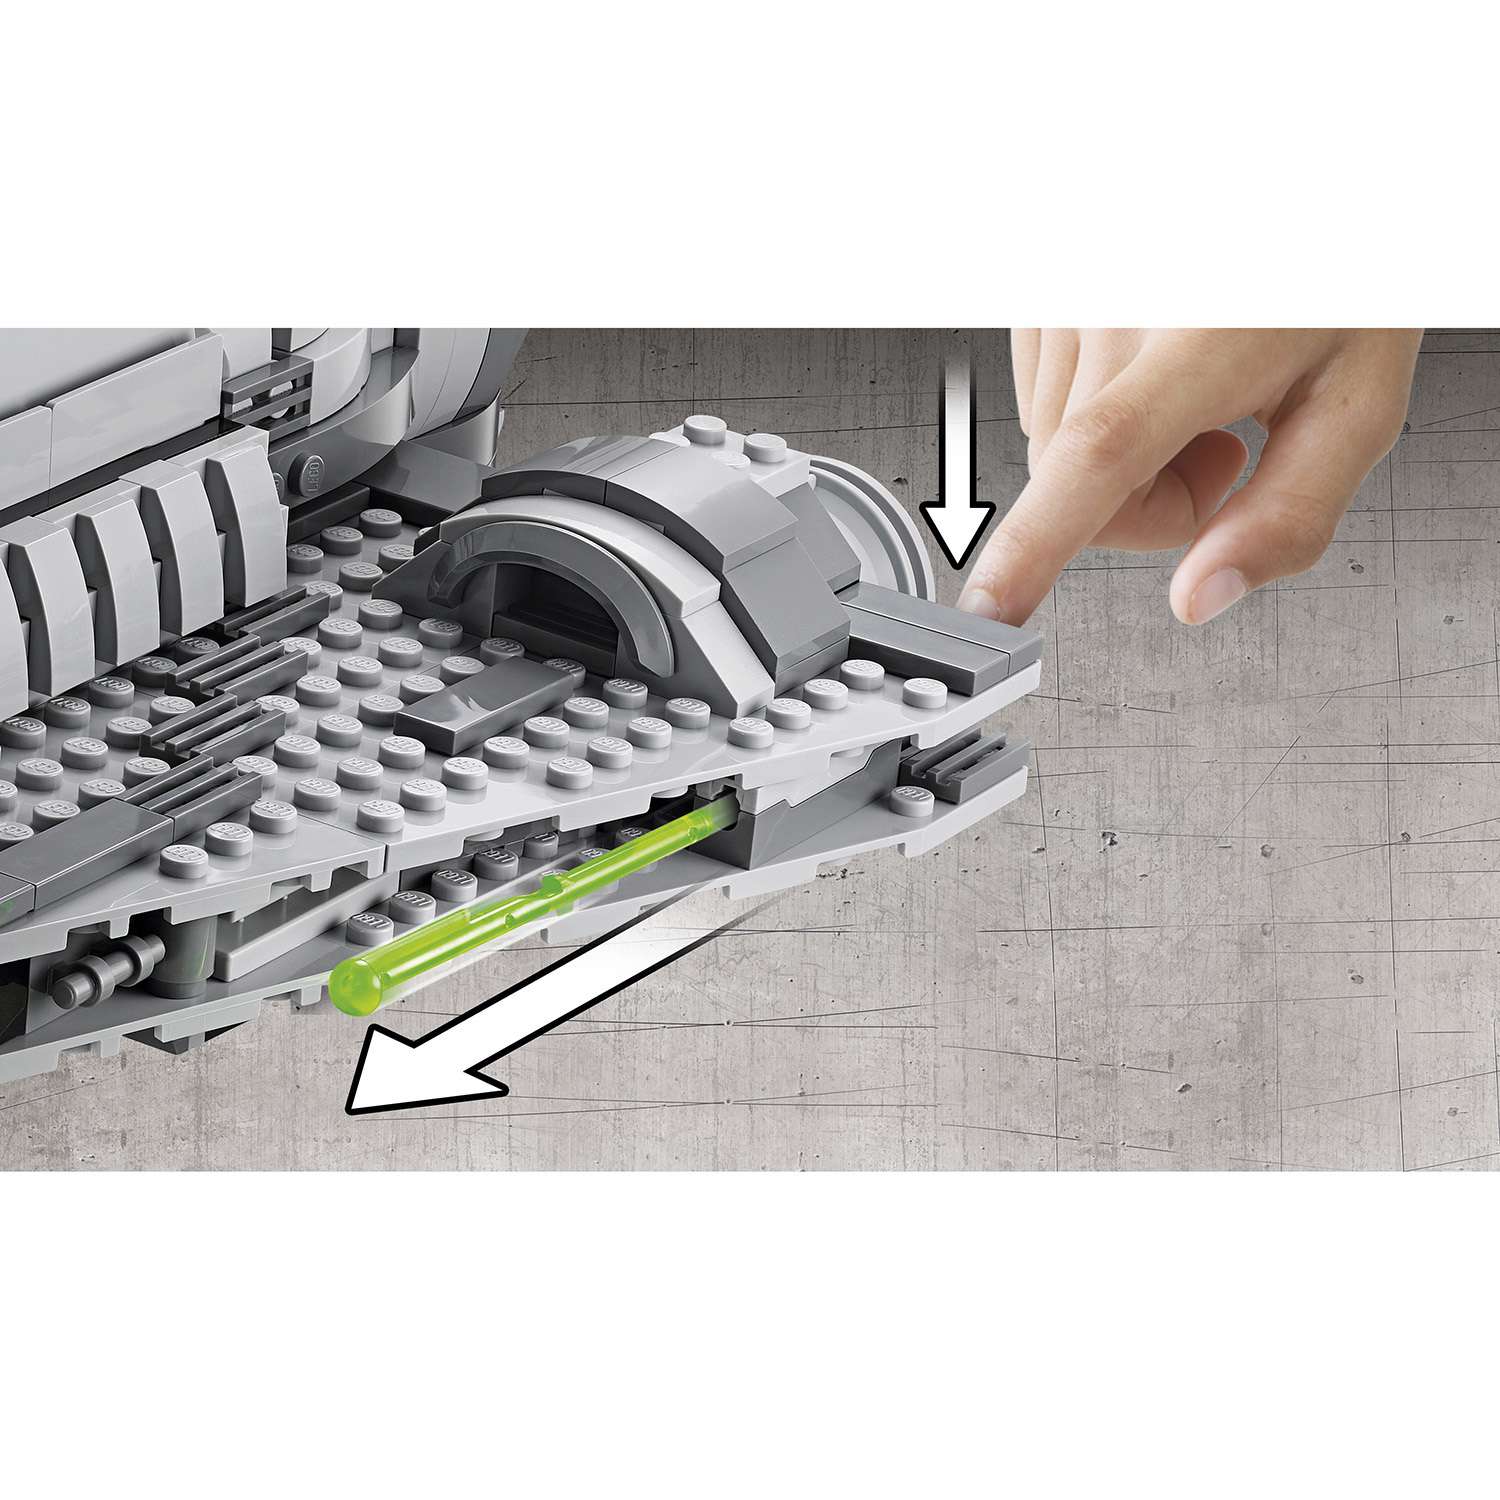 Конструктор LEGO Star Wars TM Имперский десантный корабль™ (Imperial Assault Carrier™) (75106) - фото 10